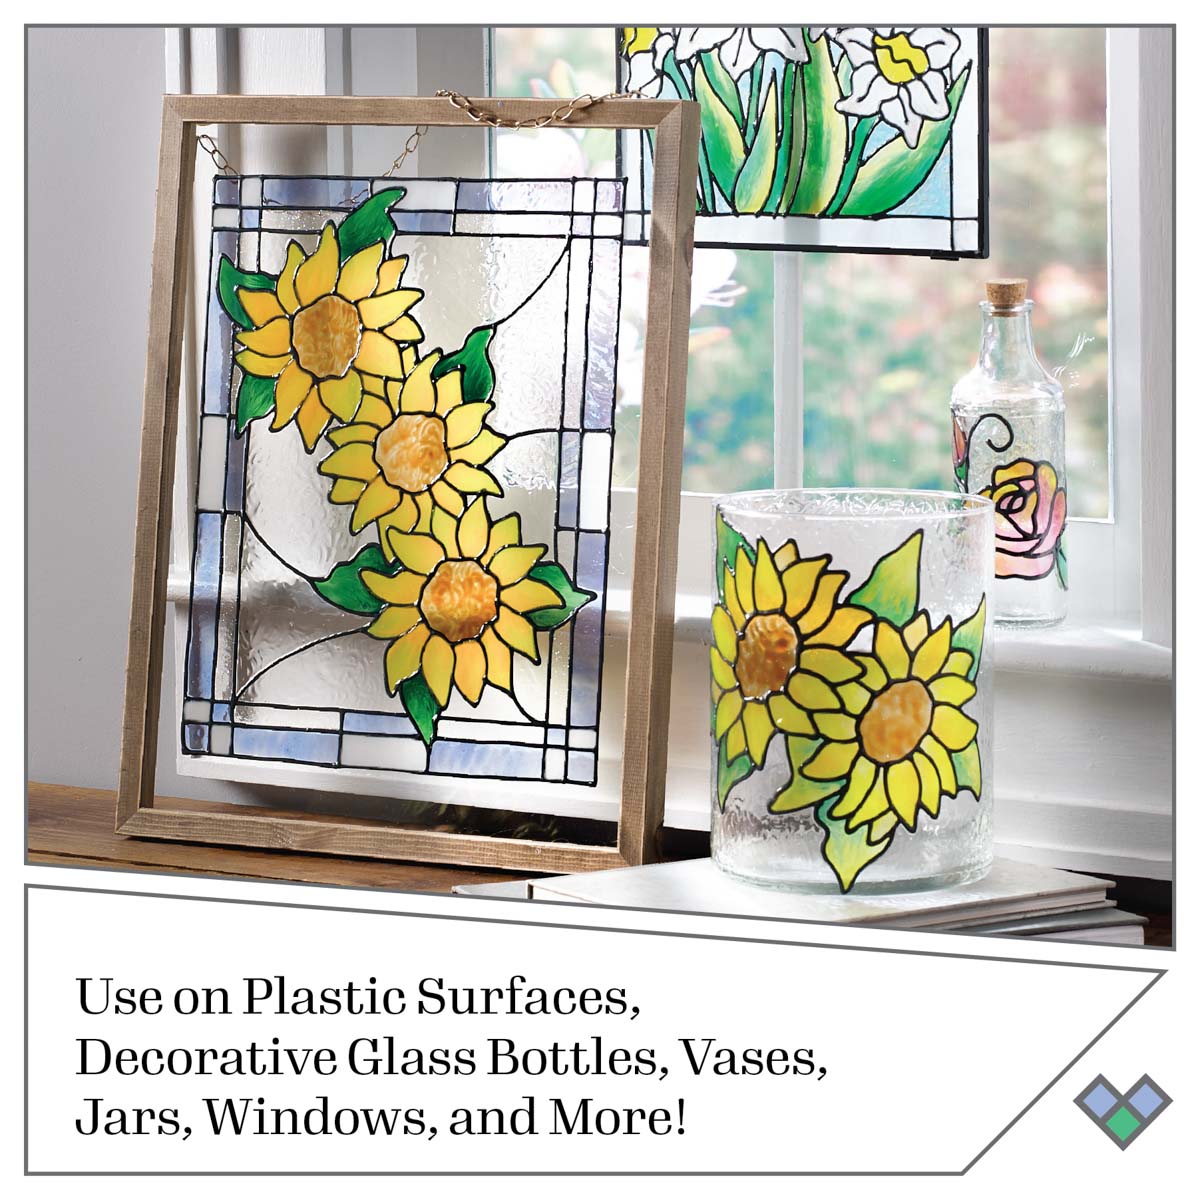 Shop Plaid Gallery Glass ® Paint Set - Floral, 6 pc - 19683 - 19683